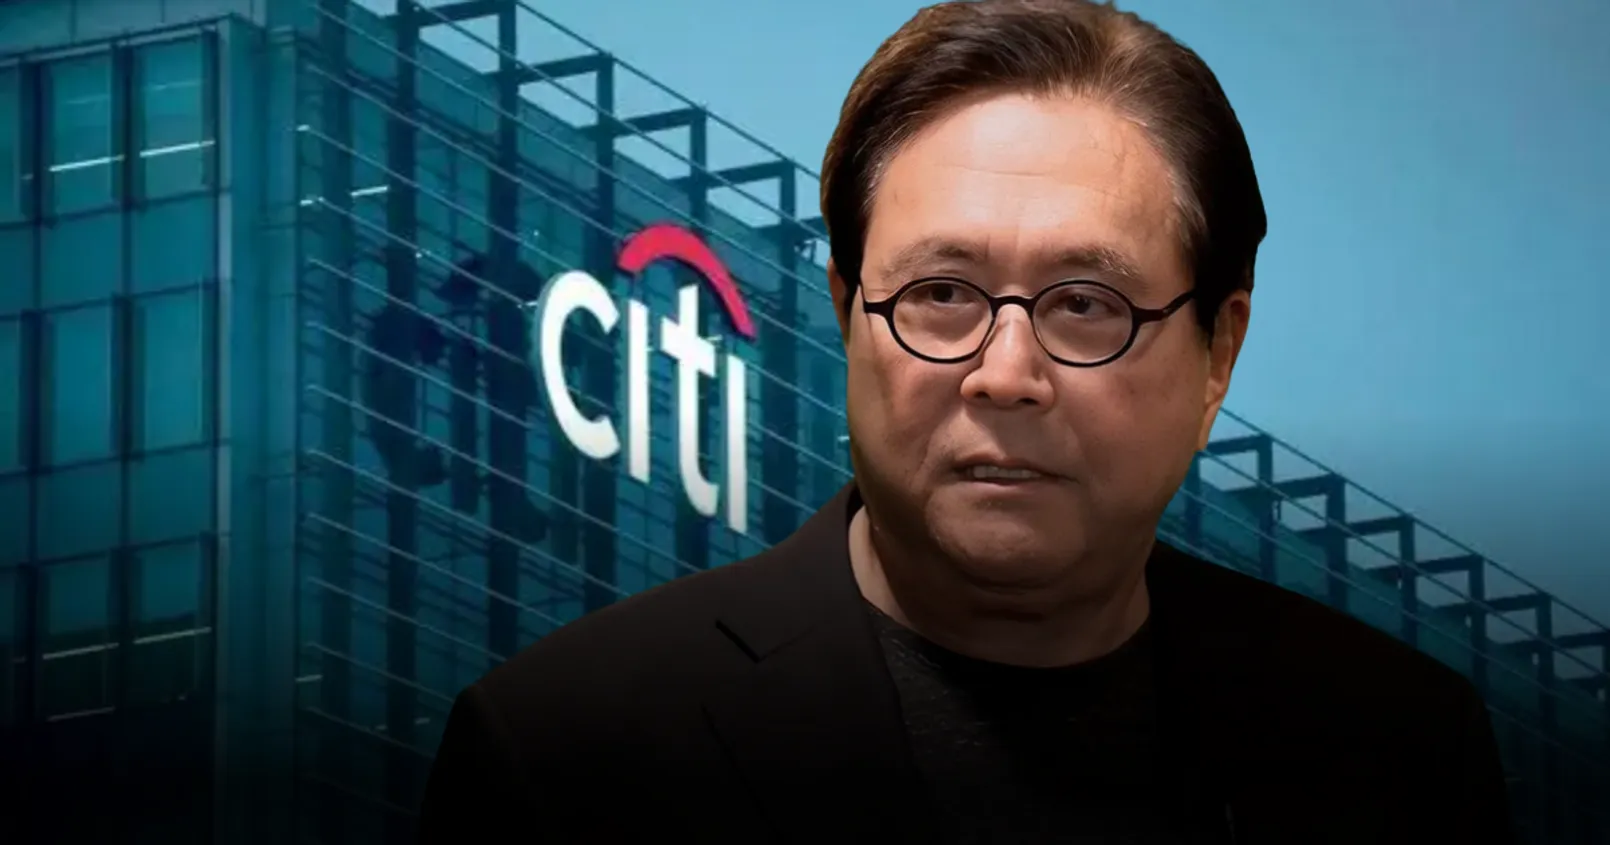 'พ่อรวย' เผยความกังวล! หลัง 'Citibank' ประกาศนำ Blockchain เข้ามาในระบบธนาคาร